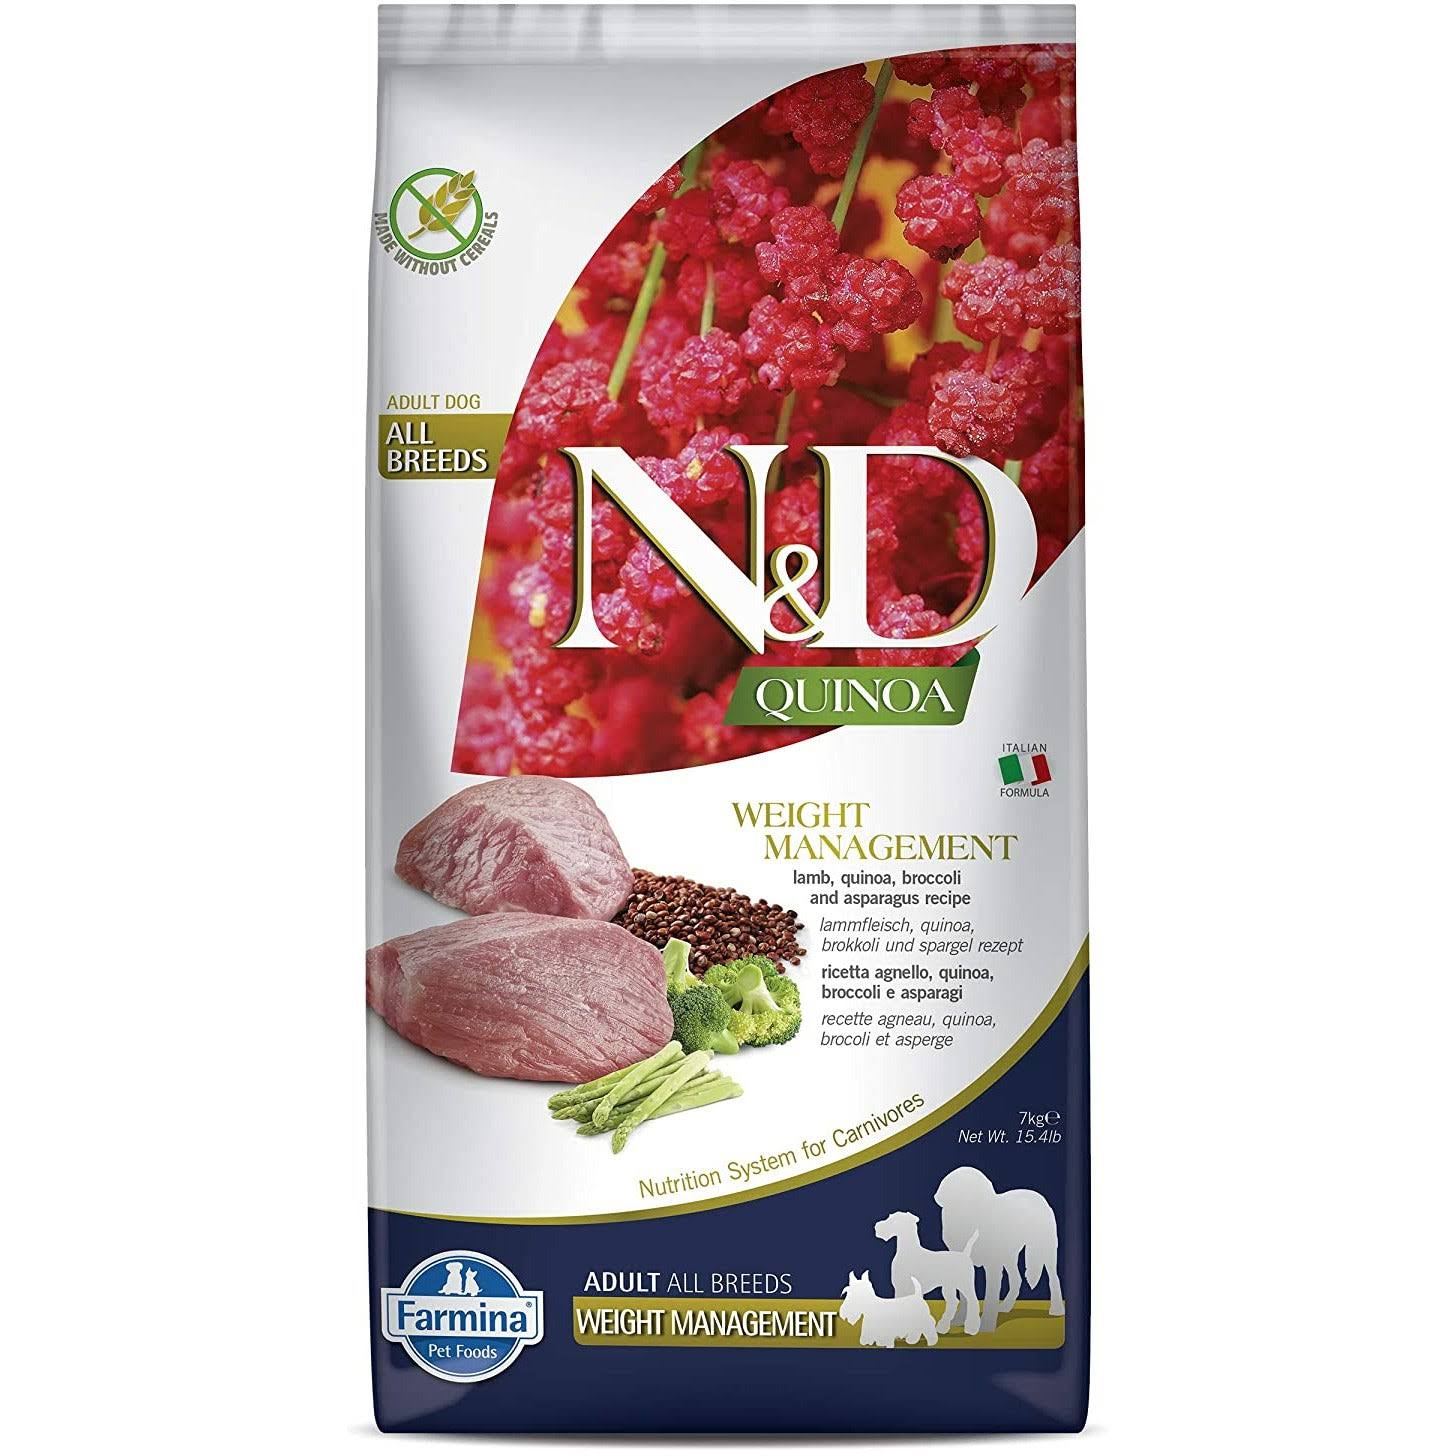 Farmina N&D Quinoa Weight Management Lamb Dry Dog Food, 15.4-lb